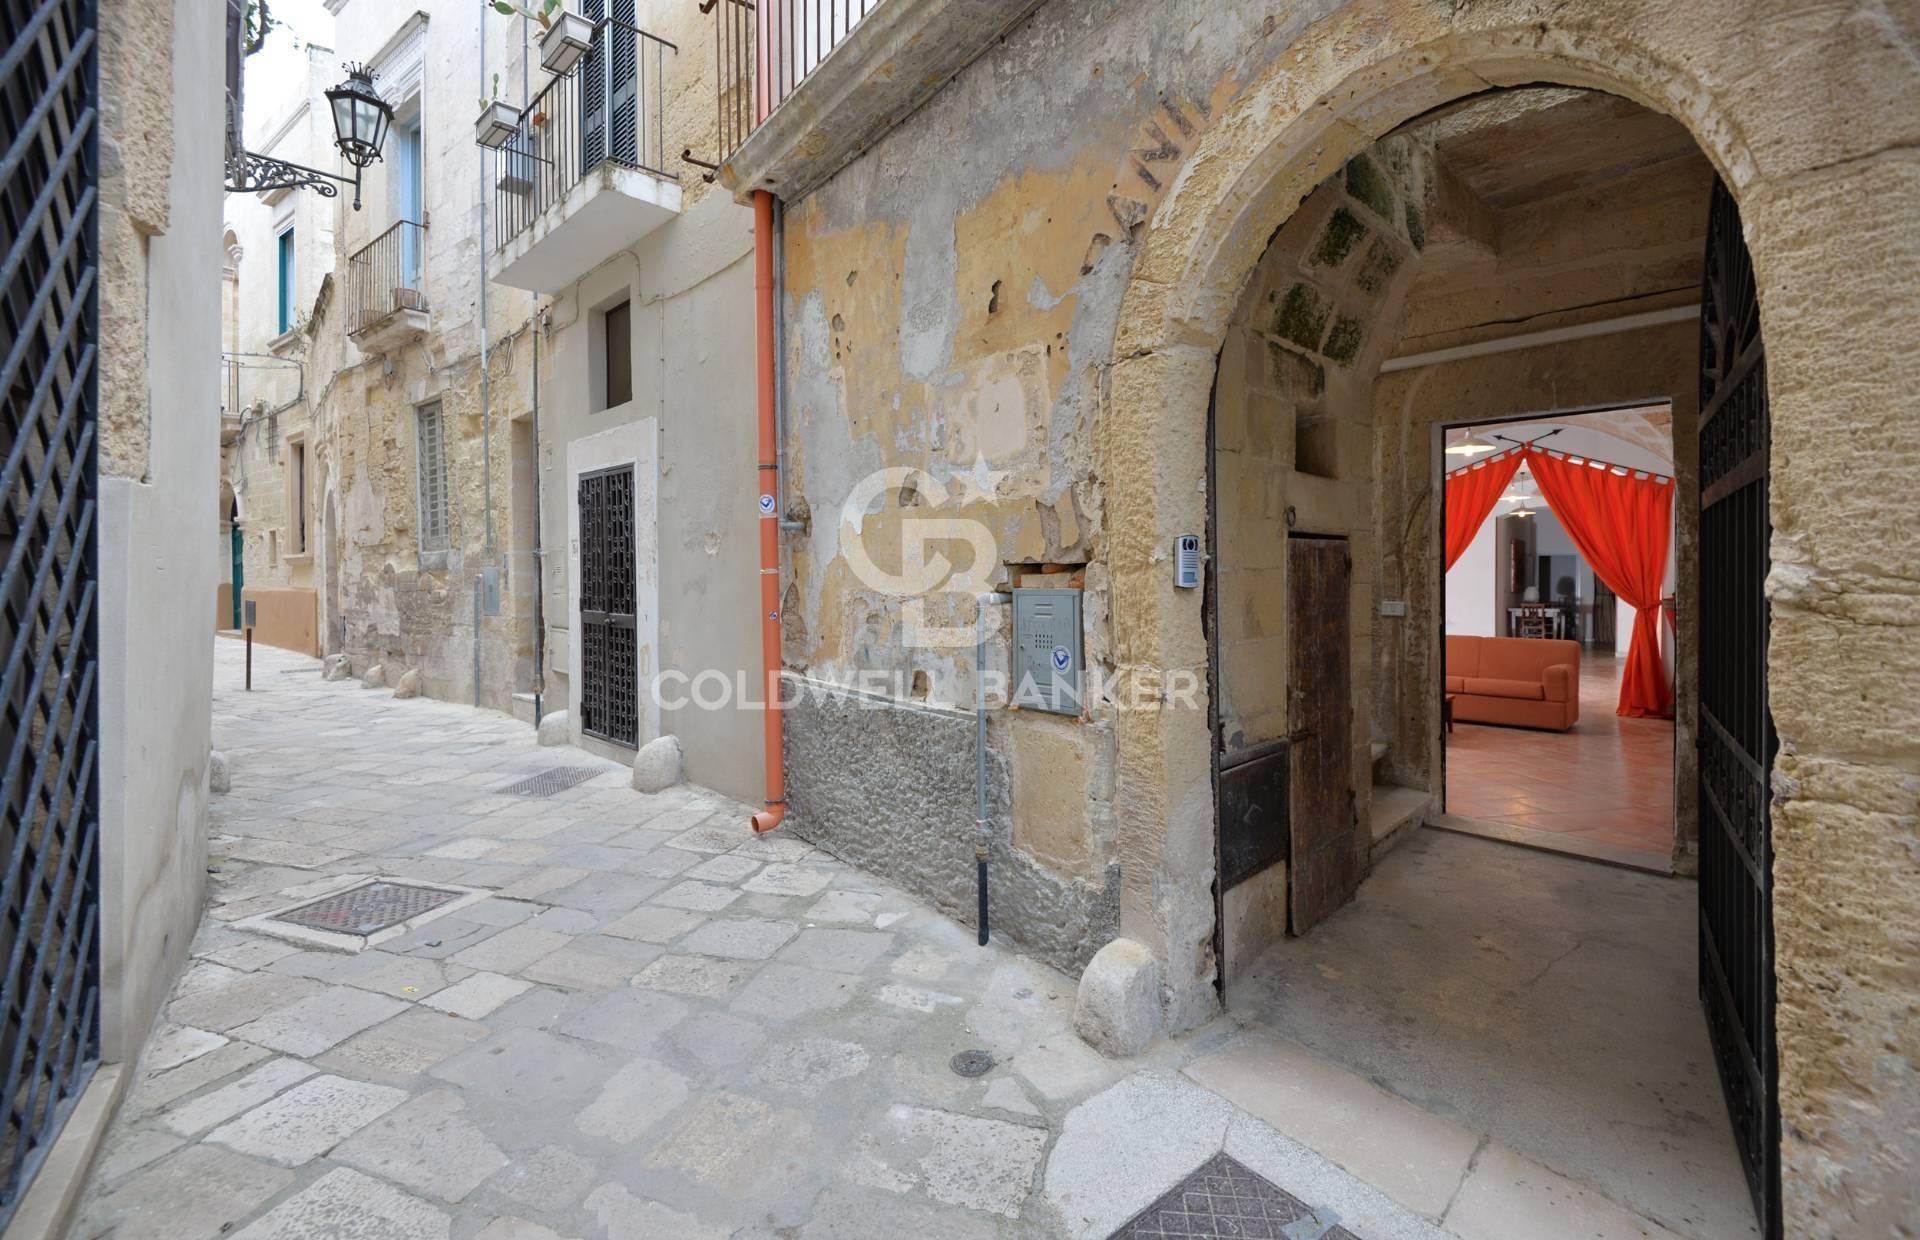 Locale commerciale in vendita a Lecce - Zona: Centro storico